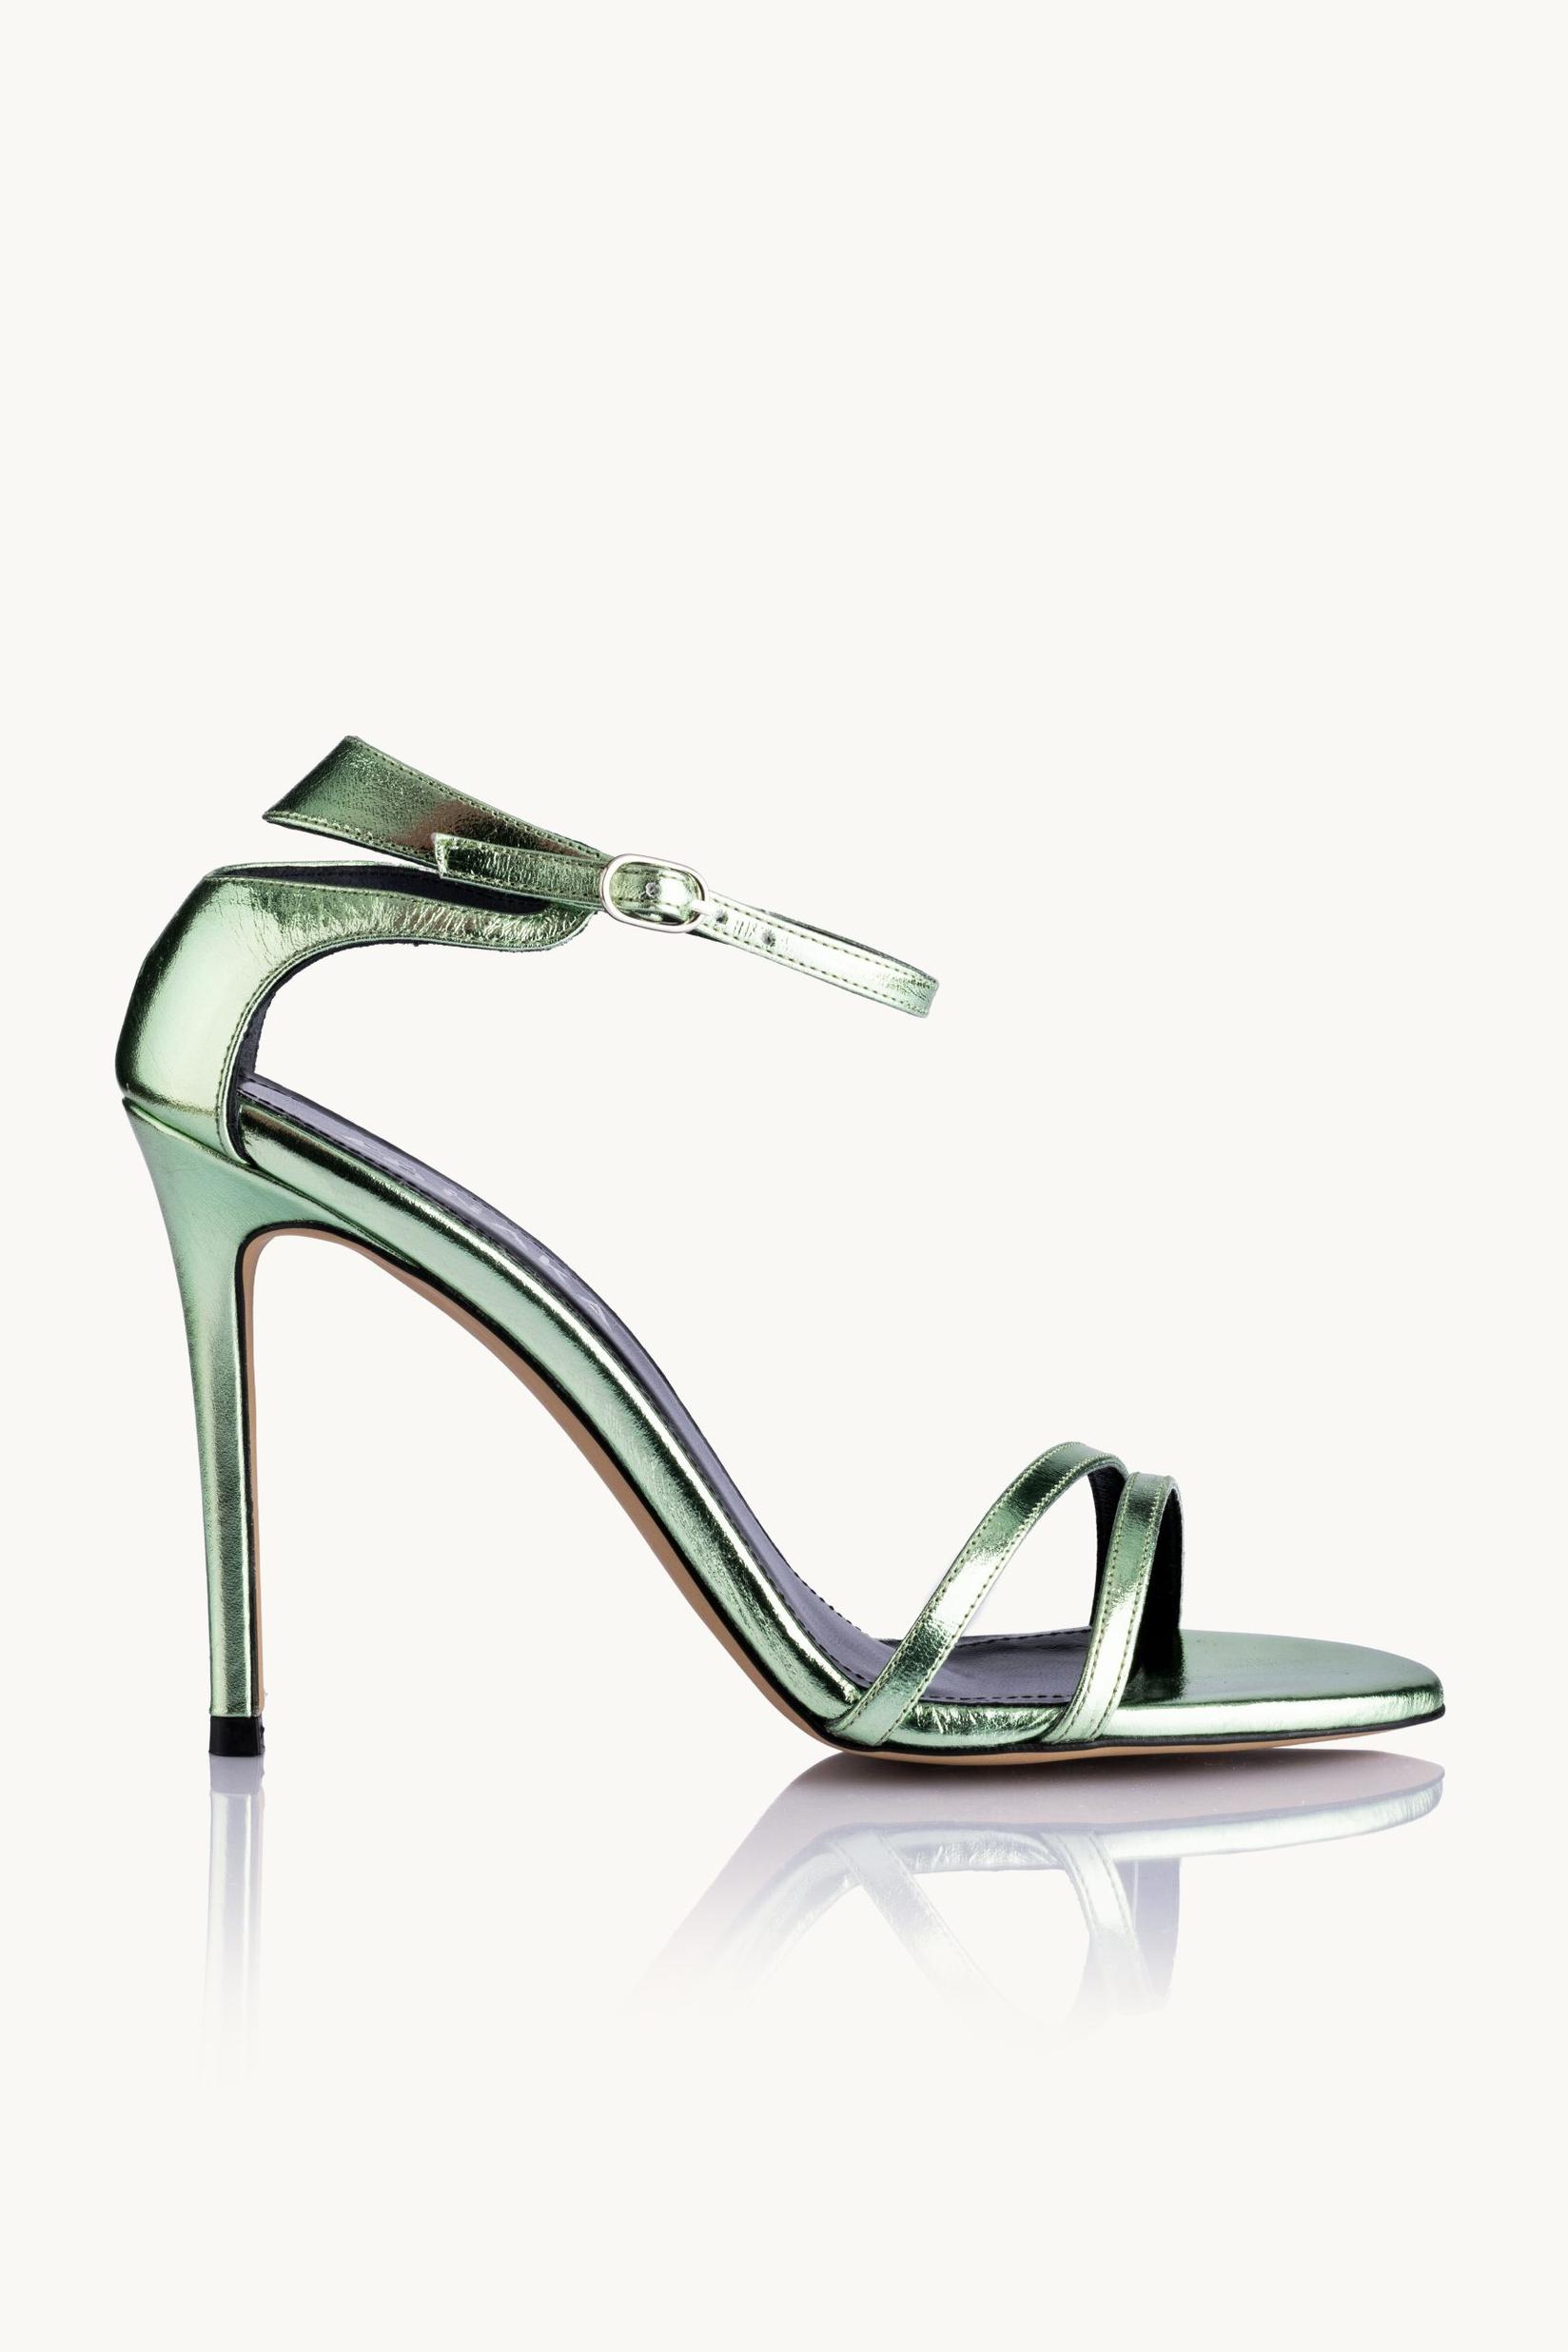 Selected image for NAKA Ženske sandale Emerald Wish zelene